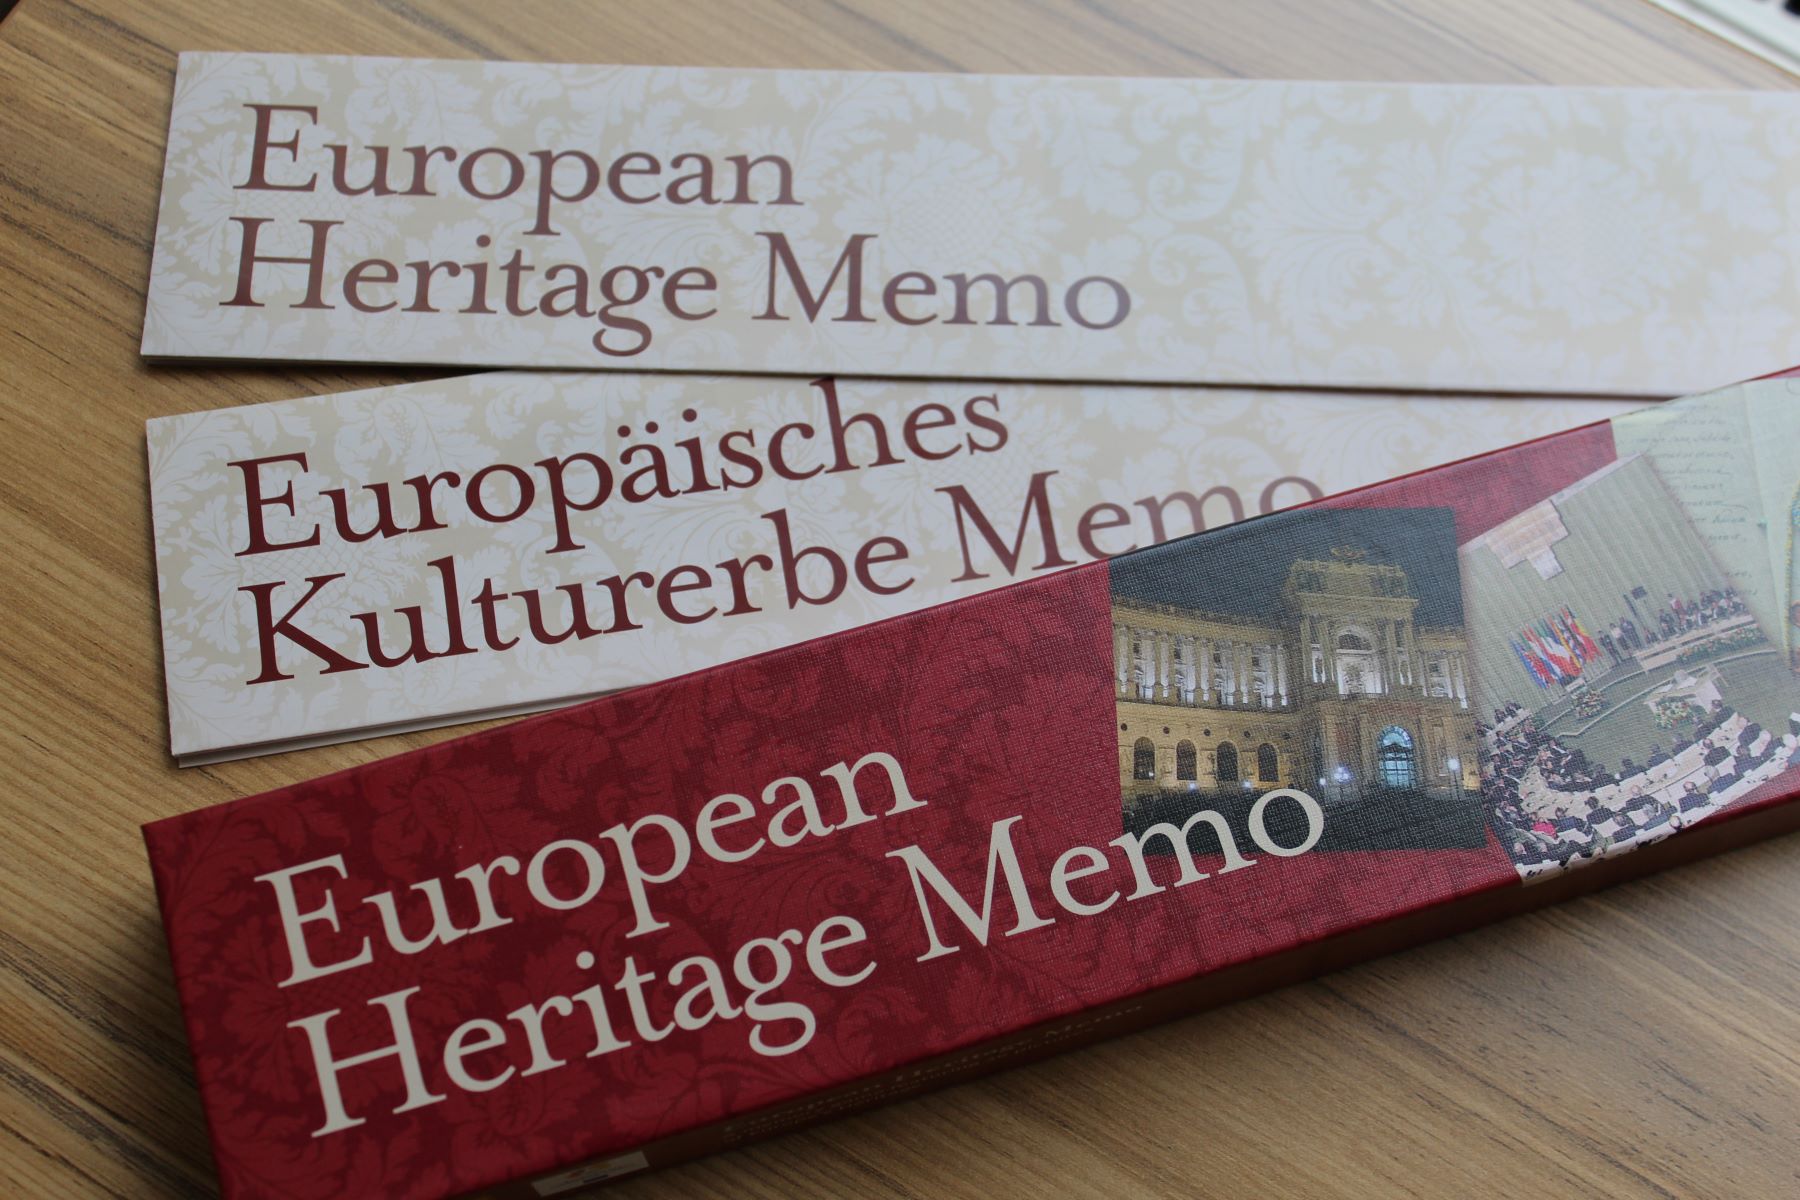 Memo-Spiel European Heritage Memo/Europäisches Kurlturerbe Memo